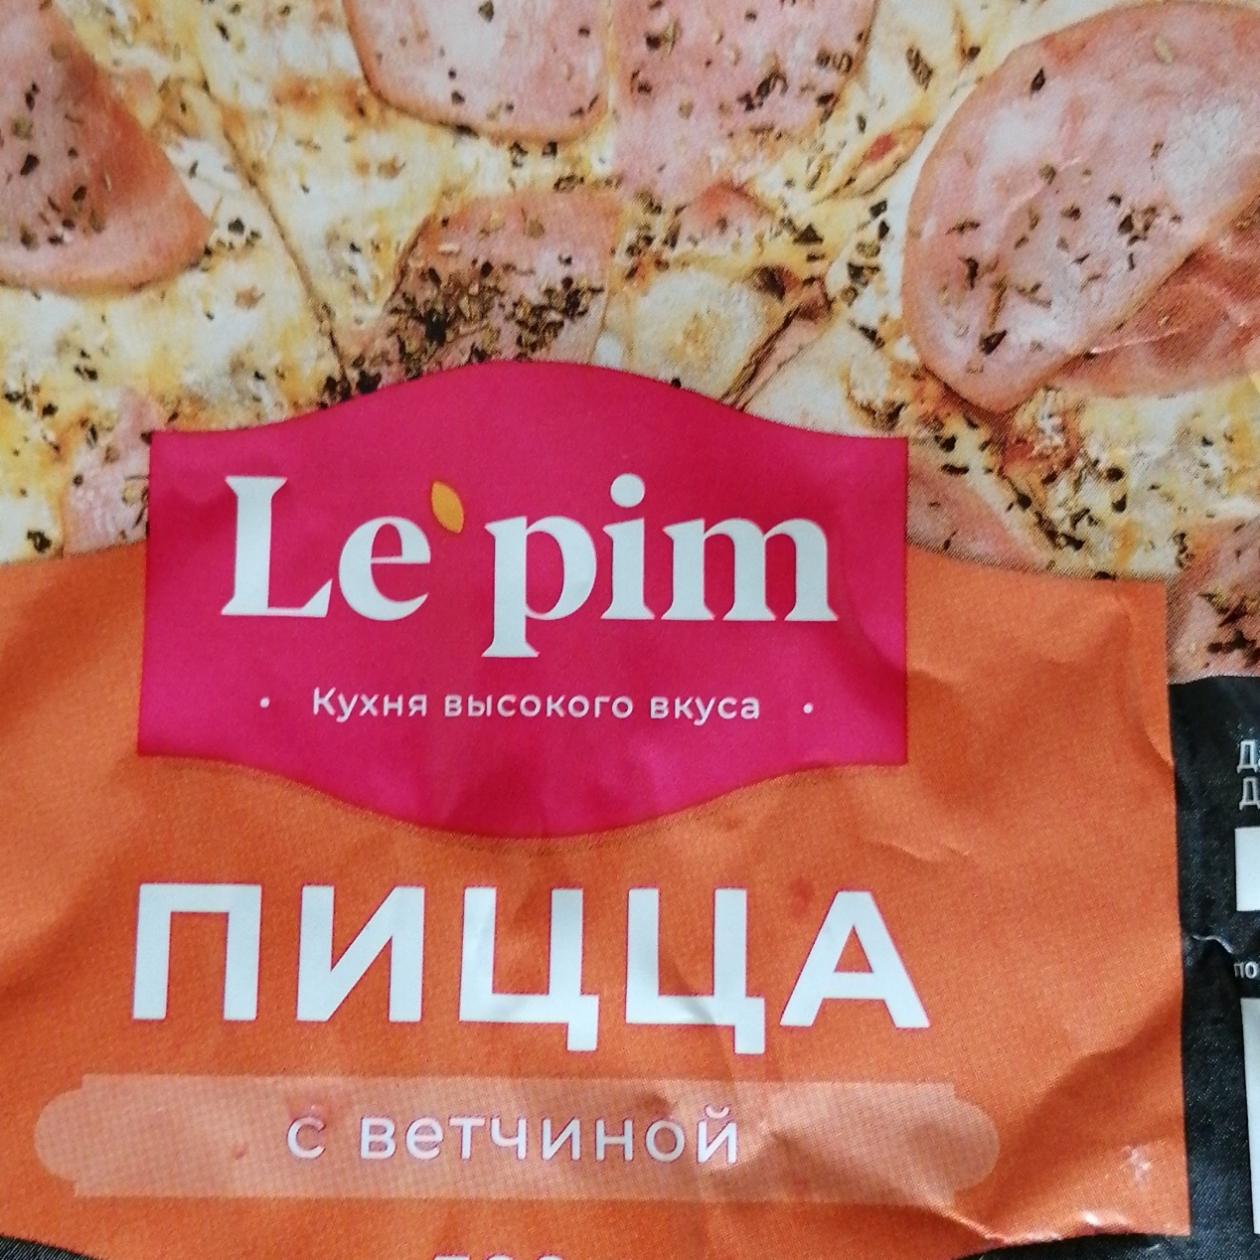 Фото - Пицца с ветчиной Le pim